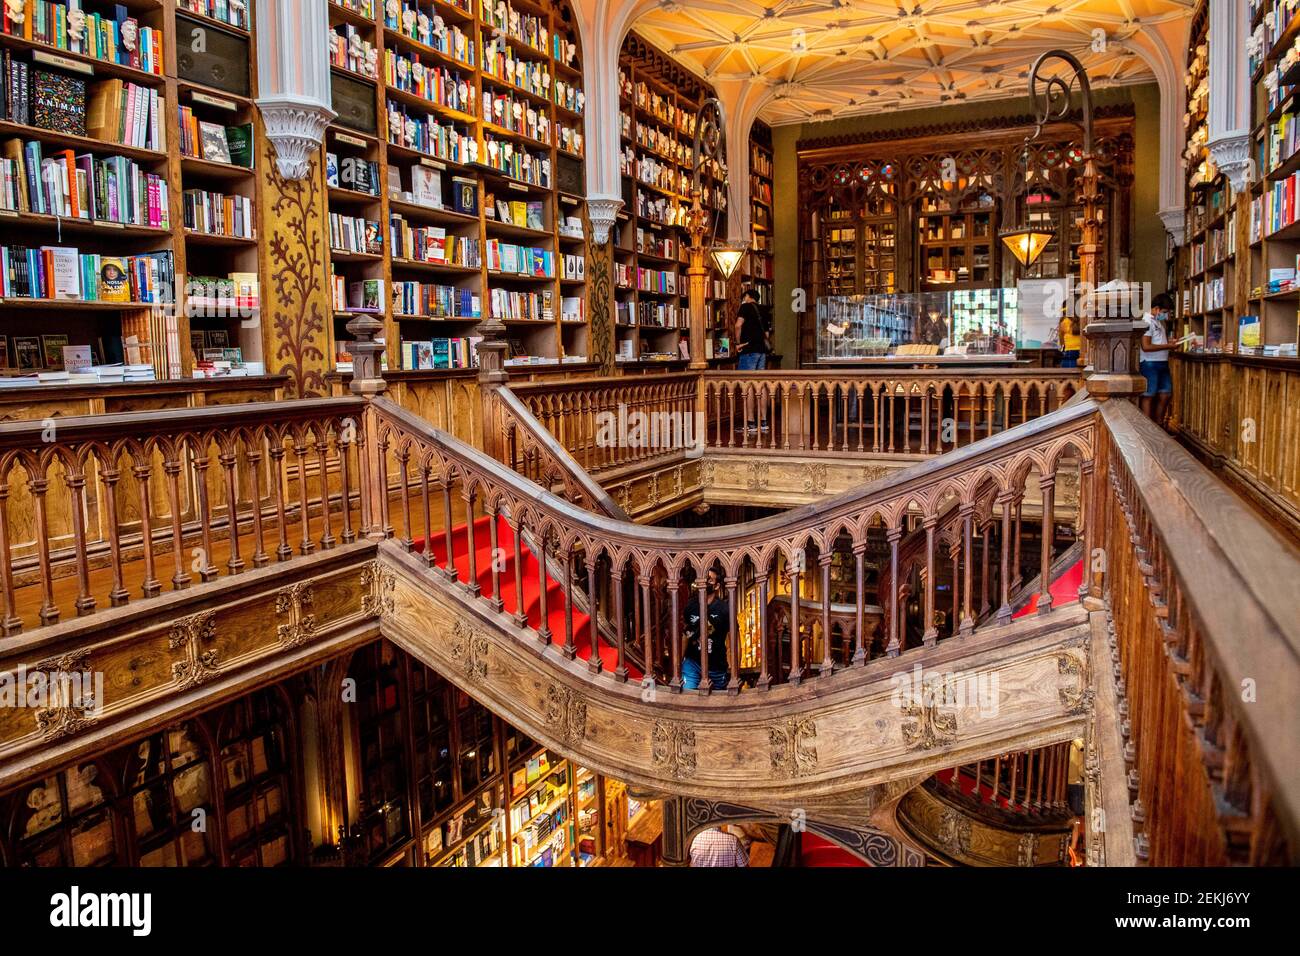 Livraria Lello & Irmao librería ubicada en el municipio portugués del norte  de Oporto, clasificada entre las mejores librerías del mundo, colocando el  tercero en listas por el editor de guías Lonely